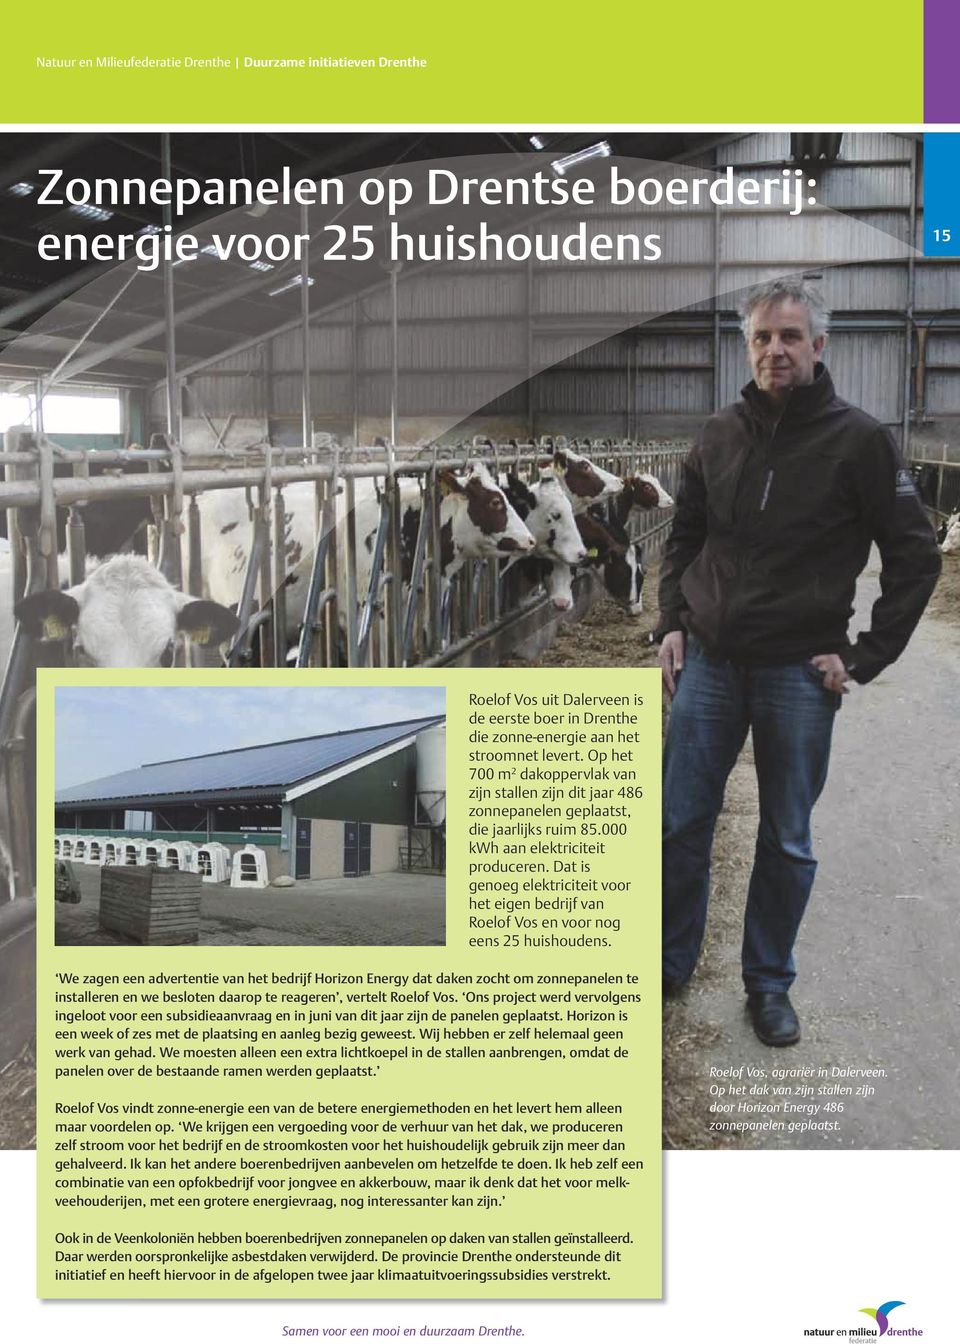 Dat is genoeg elektriciteit voor het eigen bedrijf van Roelof Vos en voor nog eens 25 huishoudens.